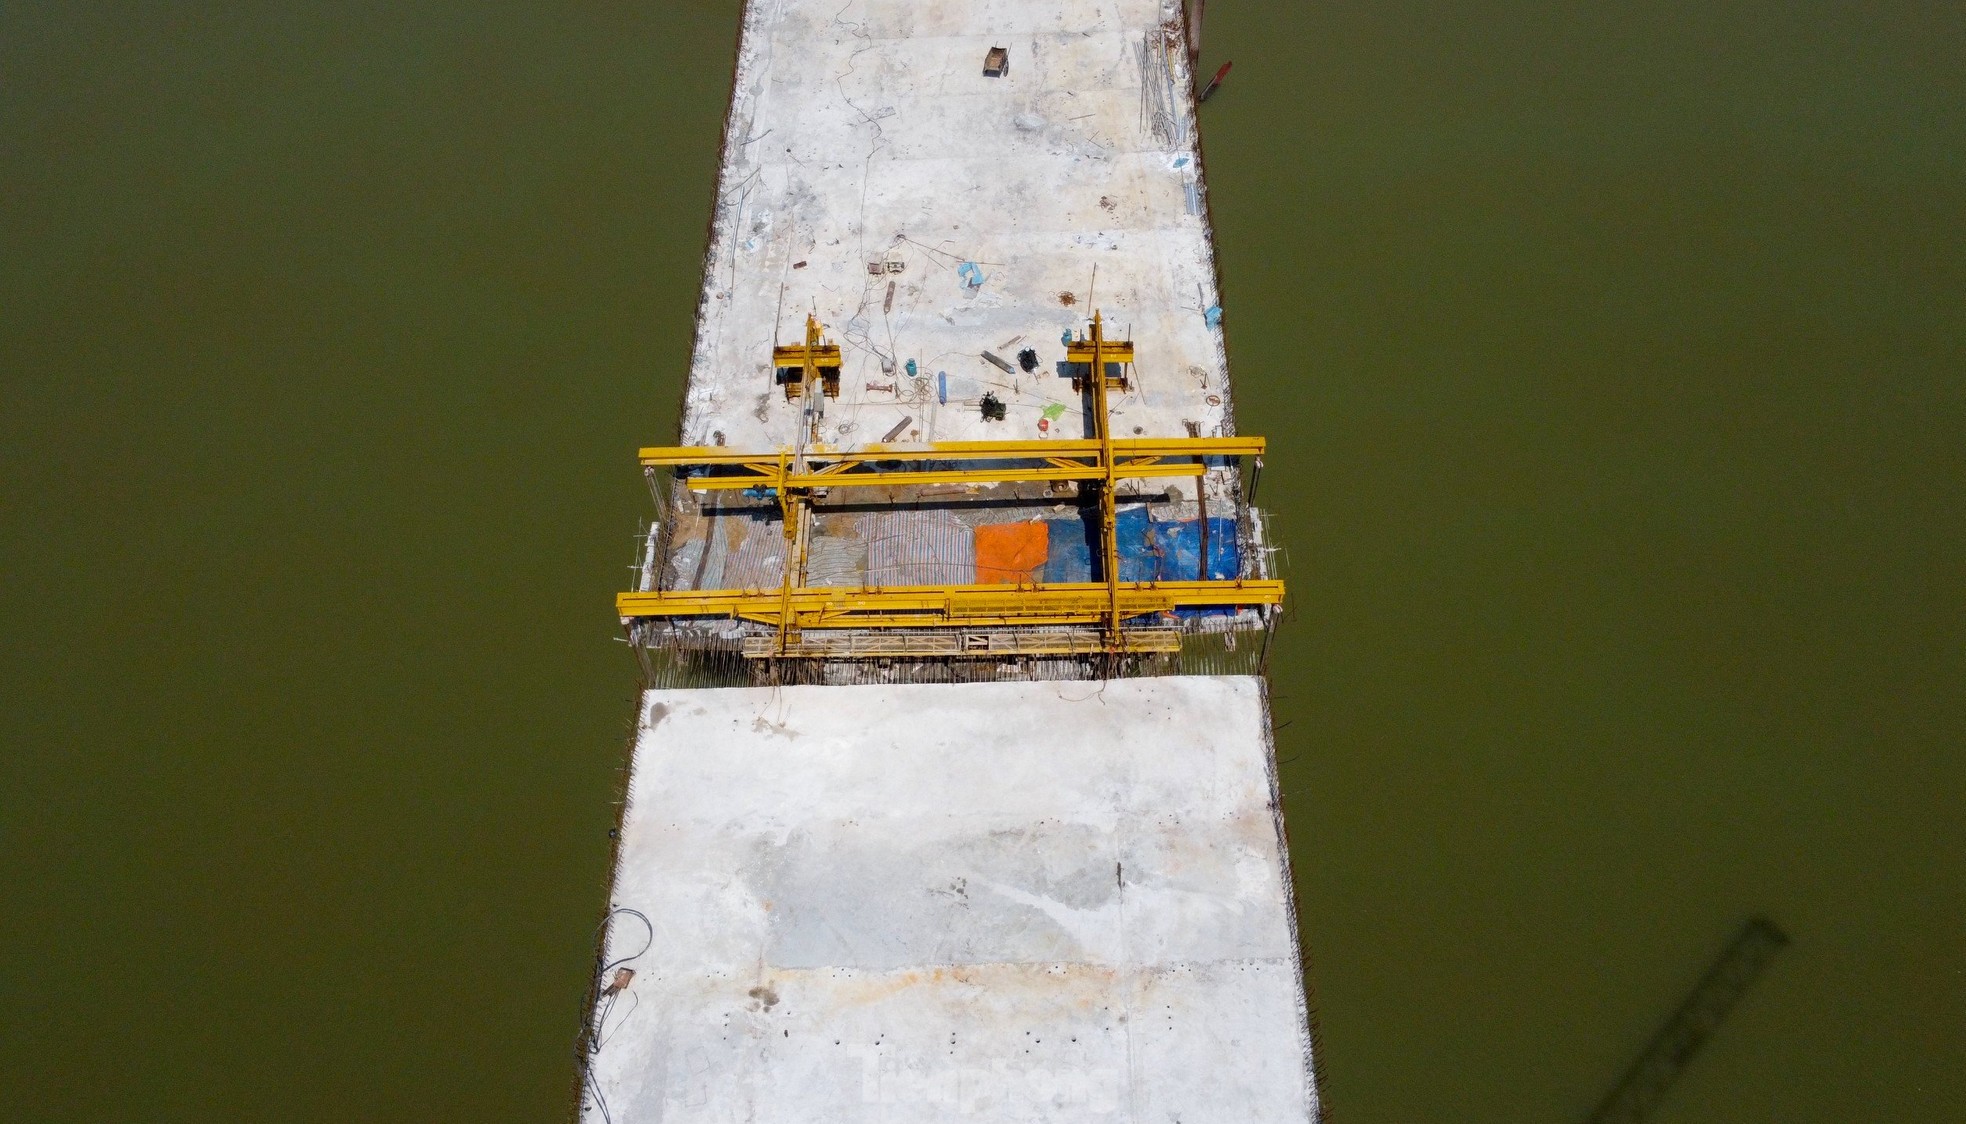 Cầu vượt sông nối 2 tỉnh Nghệ An và Hà Tĩnh trước ngày hợp long- Ảnh 9.